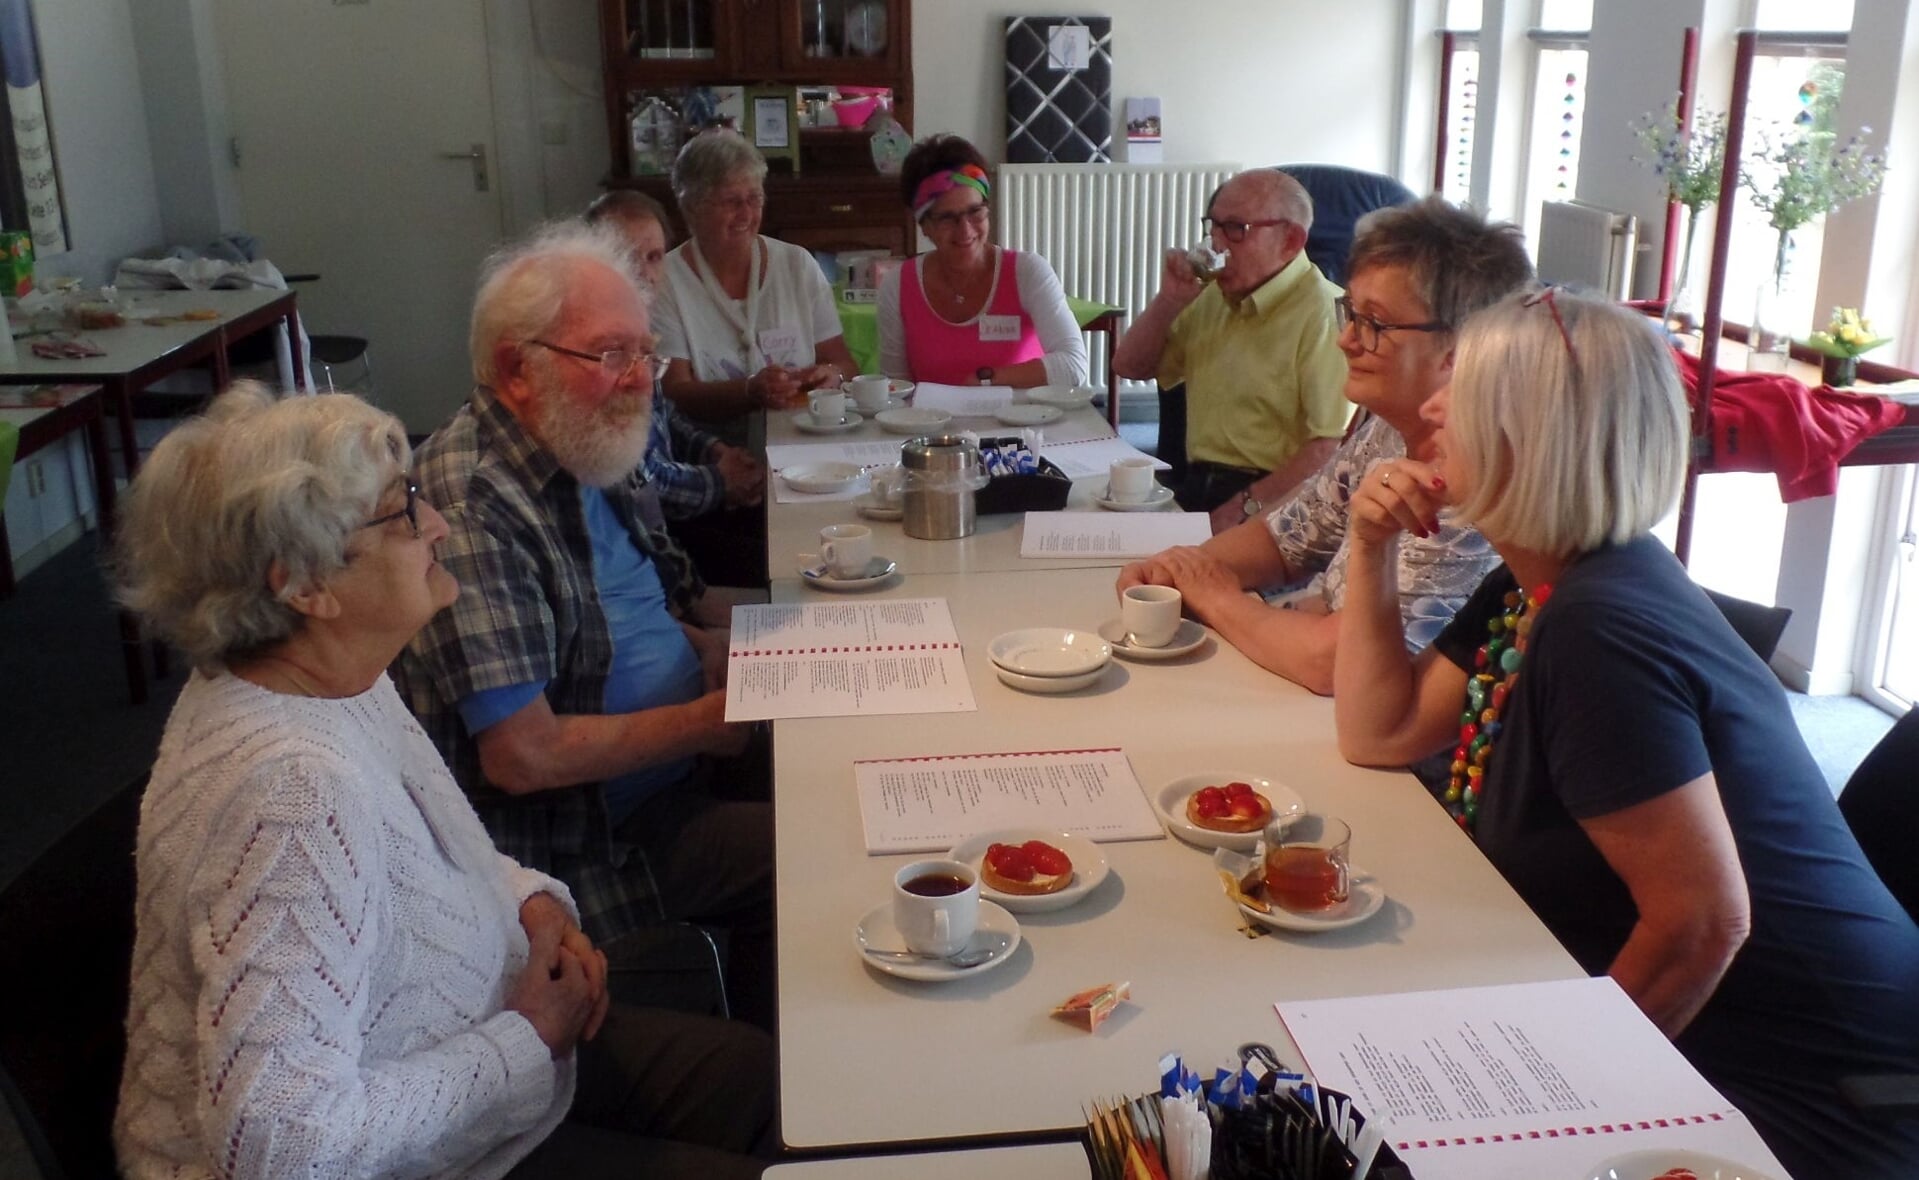 Dagbestedingsprojecten kunnen op kleine schaal weer starten om eenzaamheid van ouderen tegen te gaan. Deze foto dateert van een bijeenkomst van Dagje Thuis in De Rots. (Foto: Henk van Weert, 2018 ). 